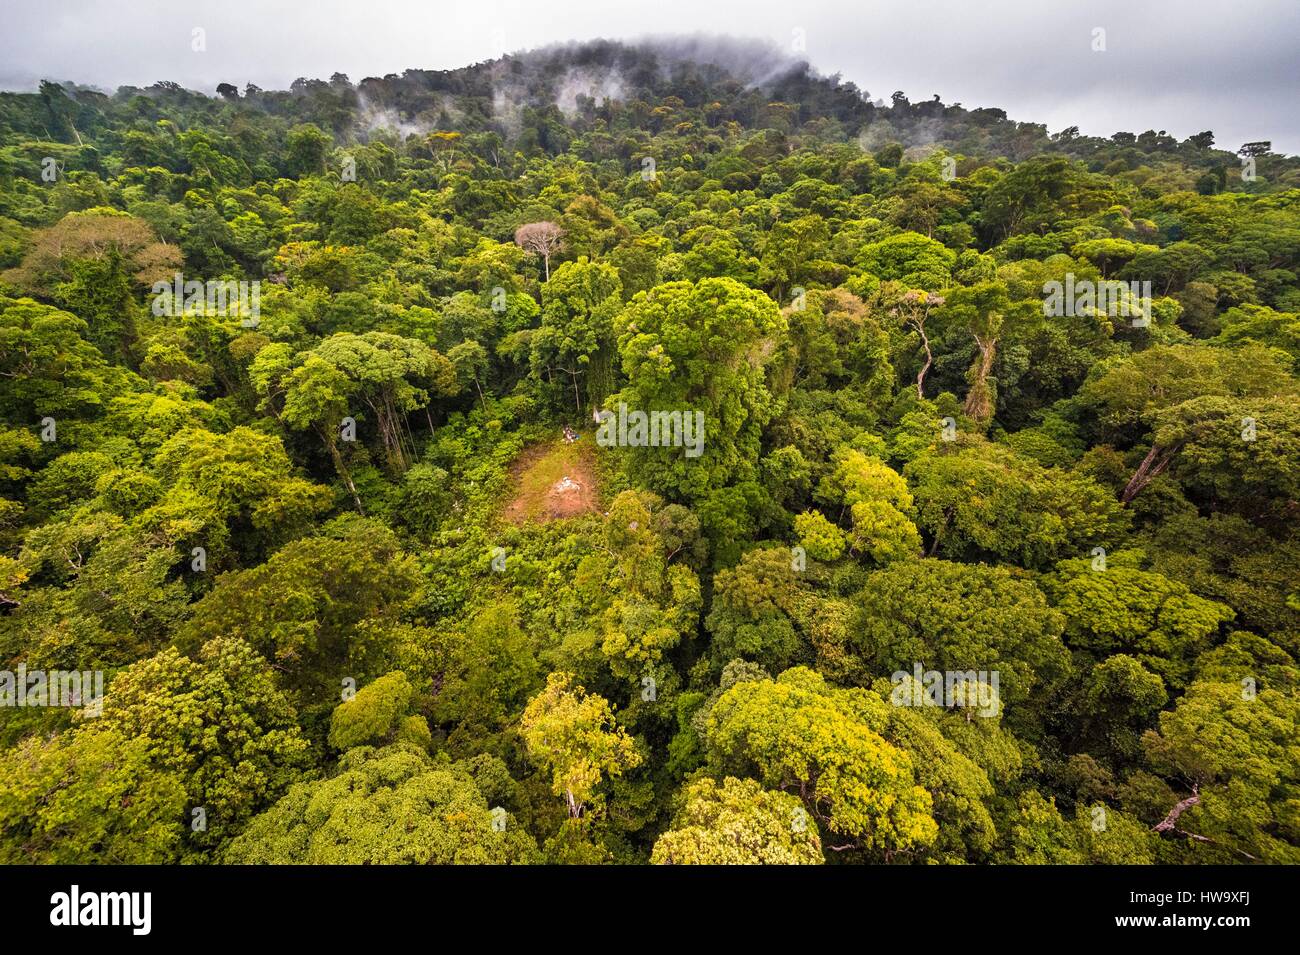 France, Guyane, Guyane Française Parc Amazonien, secteur de coeur, le sommet de la montagne de Itoupe (830 m), saison des pluies, vue aérienne de la forêt de nuages à partir de l'hélicoptère de transport de l'équipe scientifique Banque D'Images